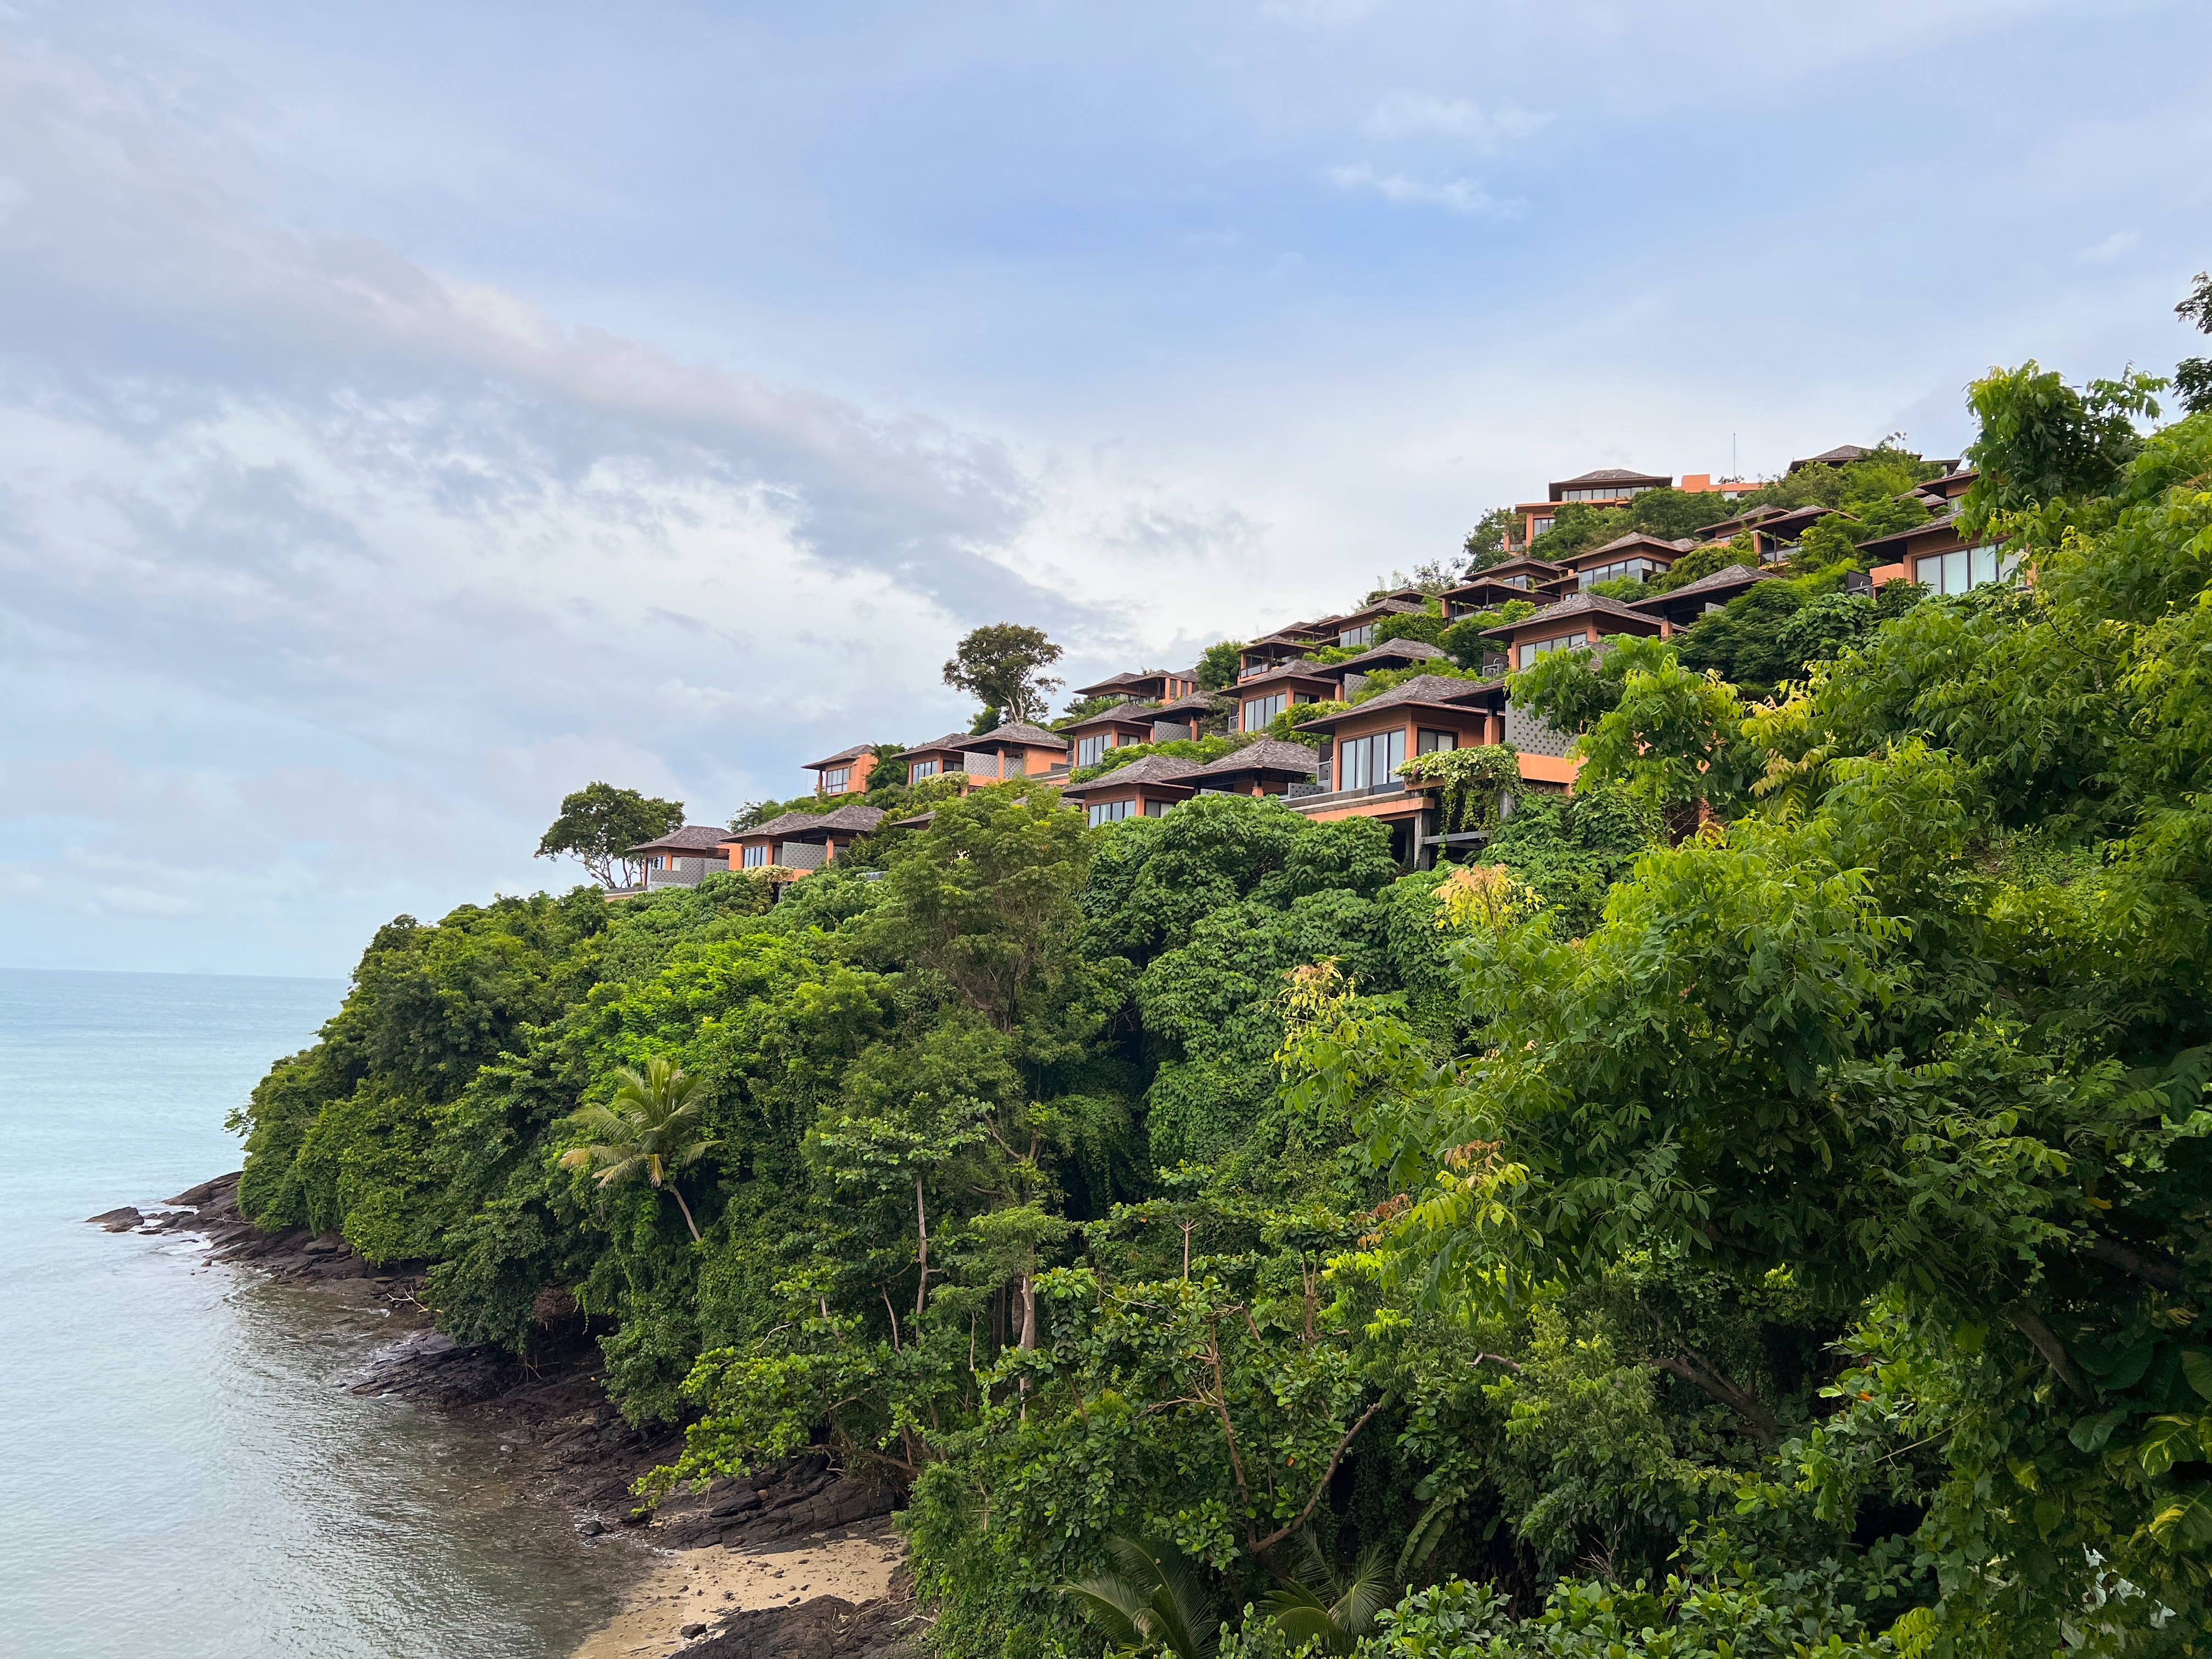 手つかずの自然が残るこの島で、パナワの素晴らしい風景を堪能しましょう。